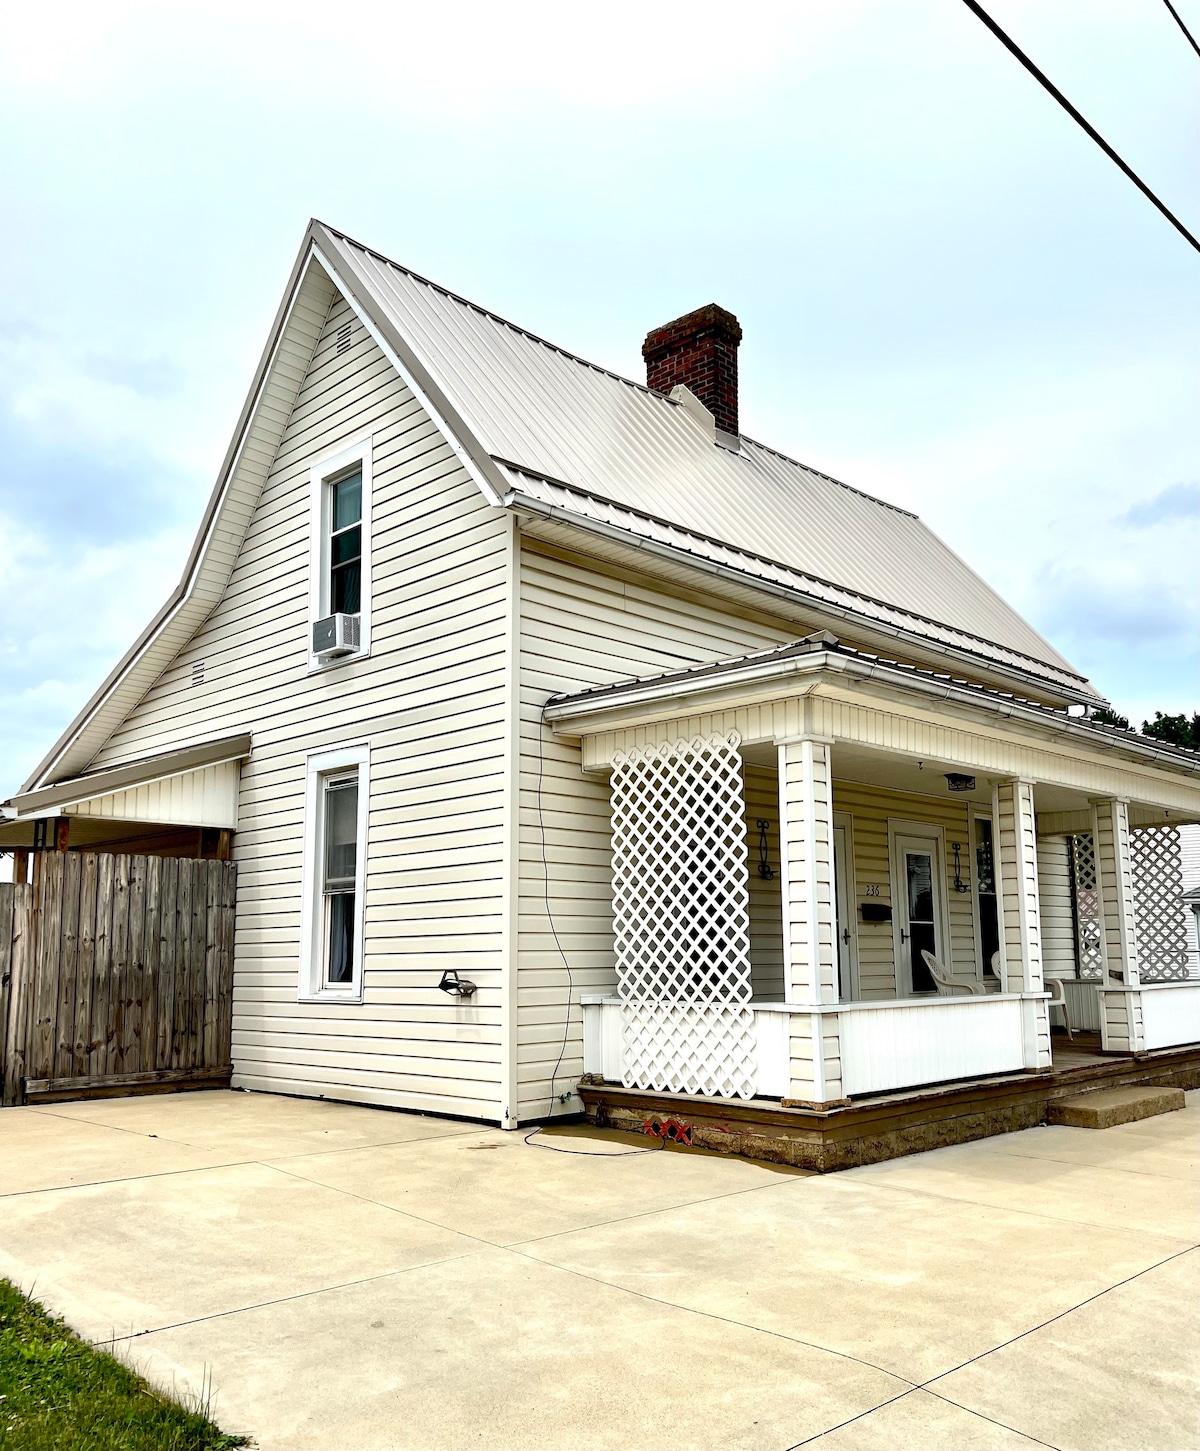 The Cottage on Franklin